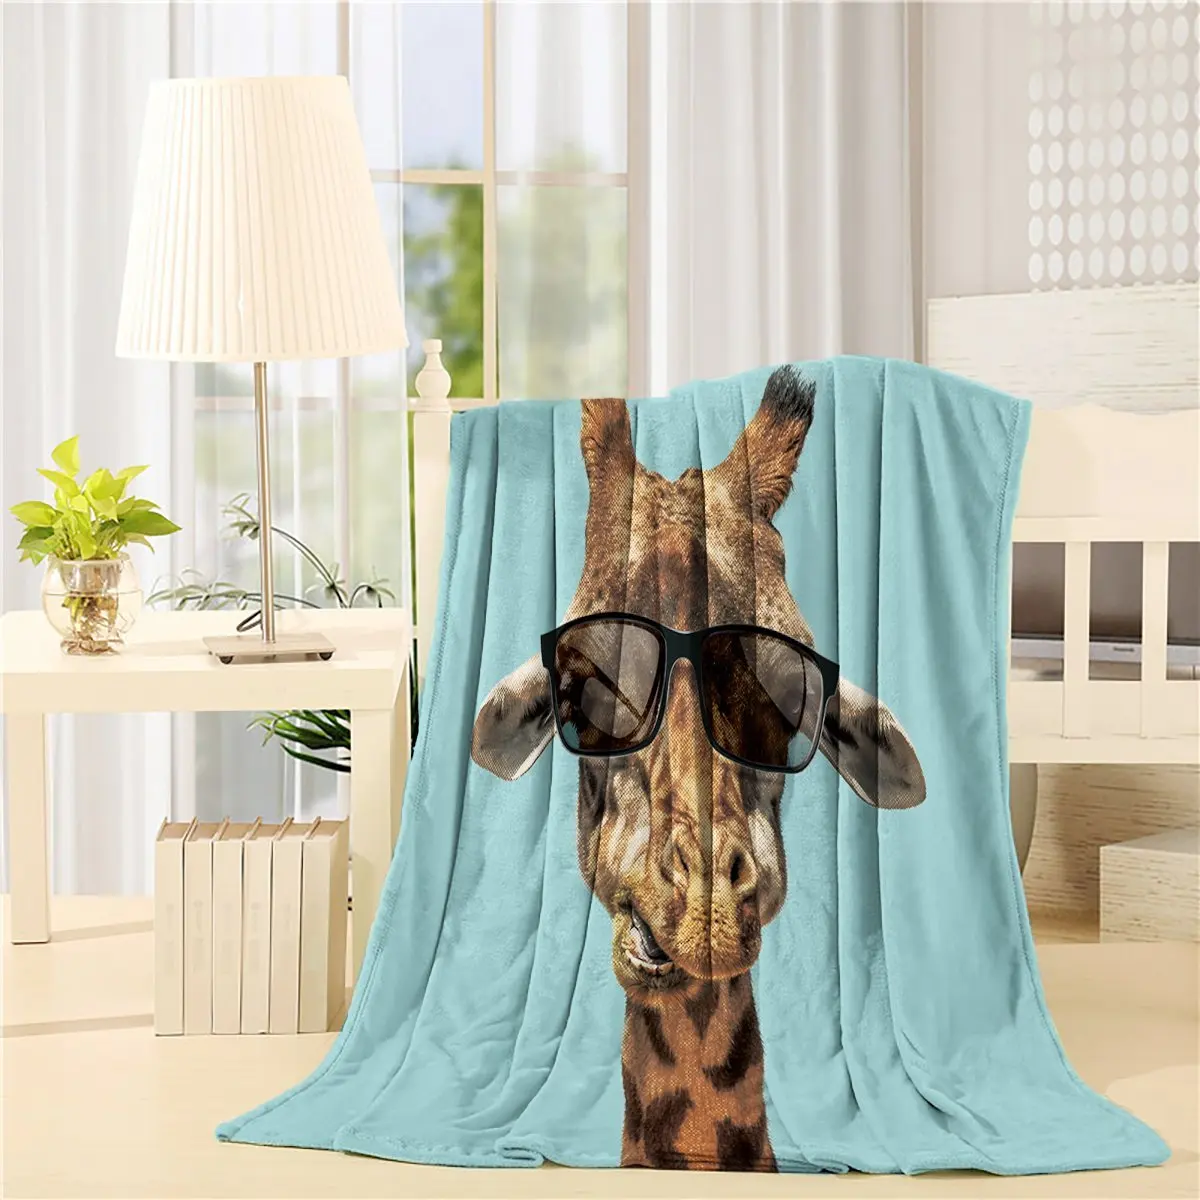 golfshoespop: Comprar Casa Moderna Fresco Girafa Com Óculos De Sol Art  Prints Fleece Blanket Folha Cama Lance Cobertor Baratas Online Preço